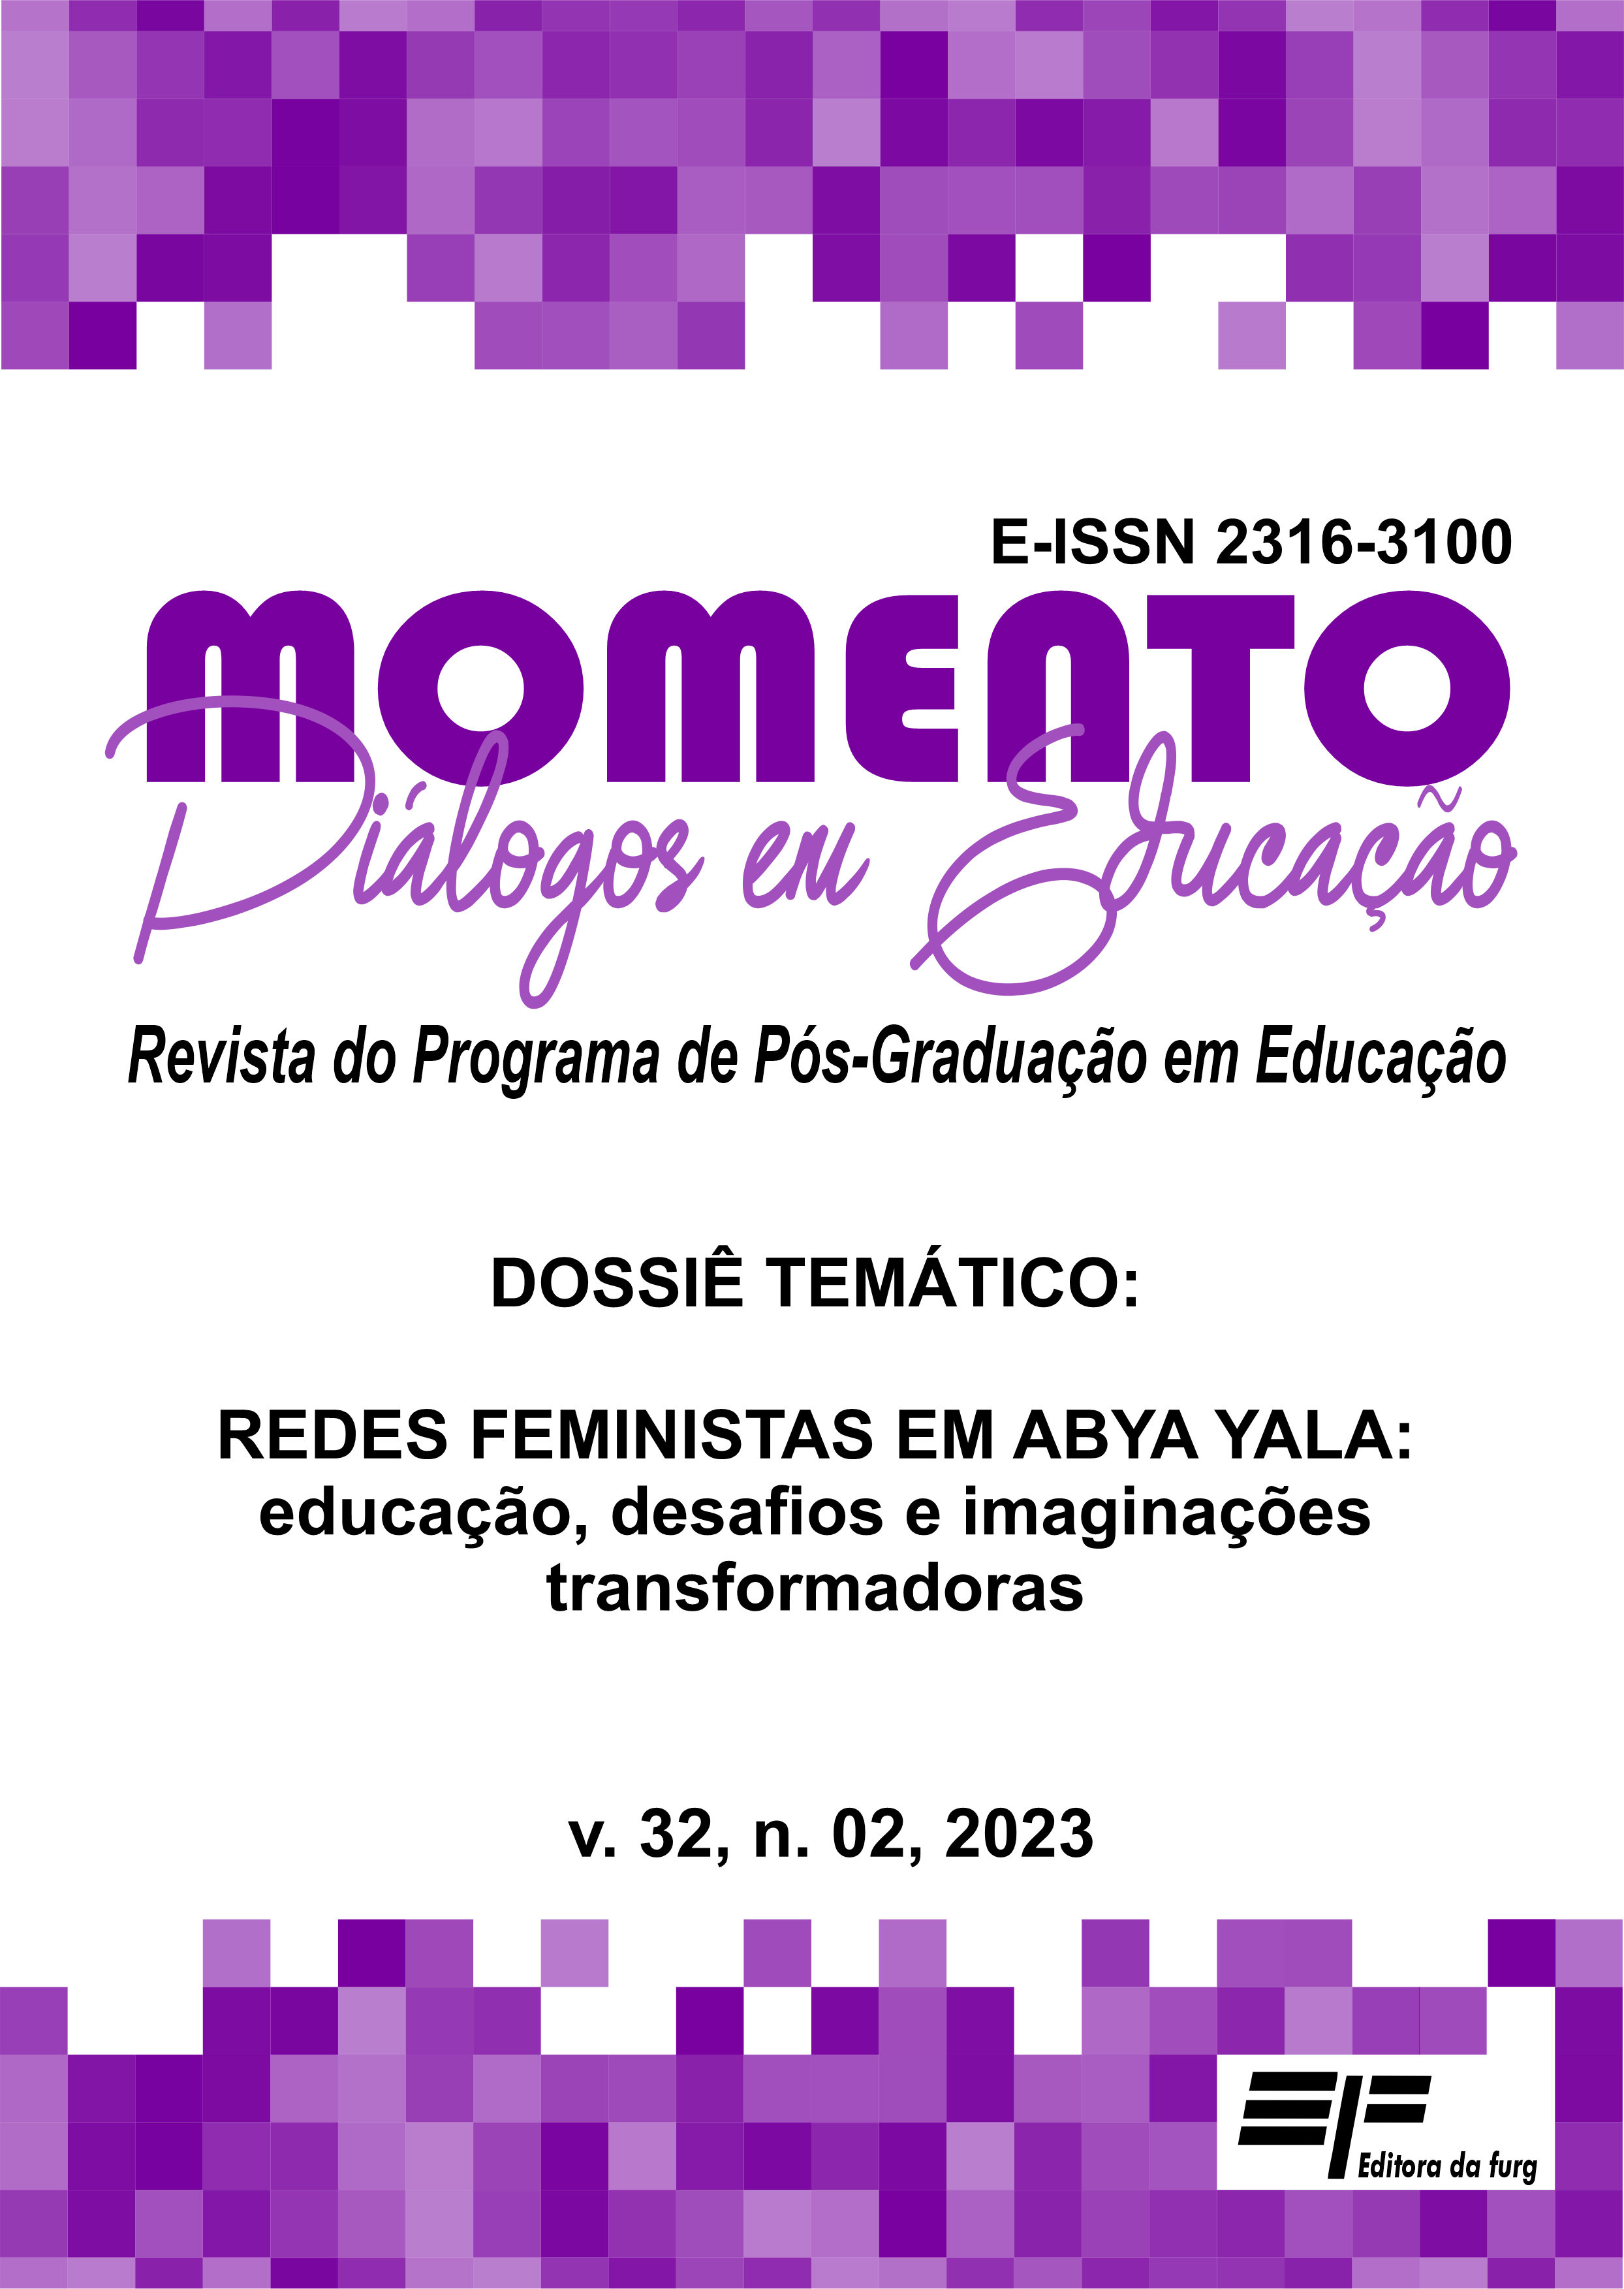 					Visualizar v. 32 n. 02 (2023): Dossiê Temático: REDES FEMINISTAS EM ABYA YALA: educação, desafios e imaginações transformadoras
				